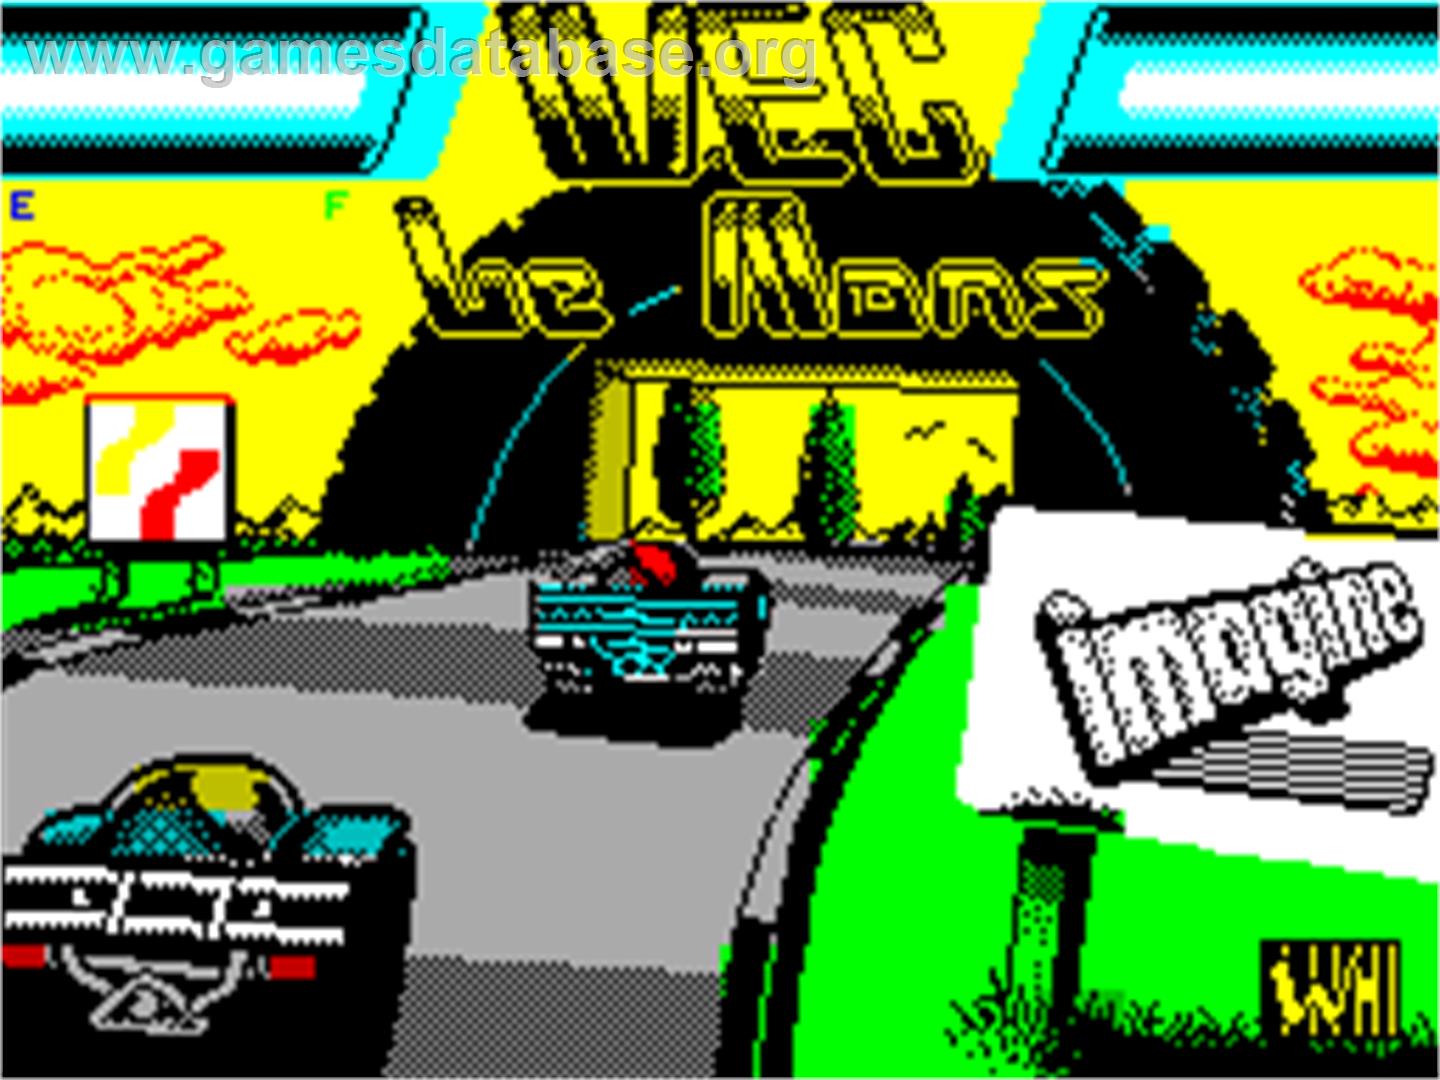 WEC Le Mans - Sinclair ZX Spectrum - Artwork - Title Screen